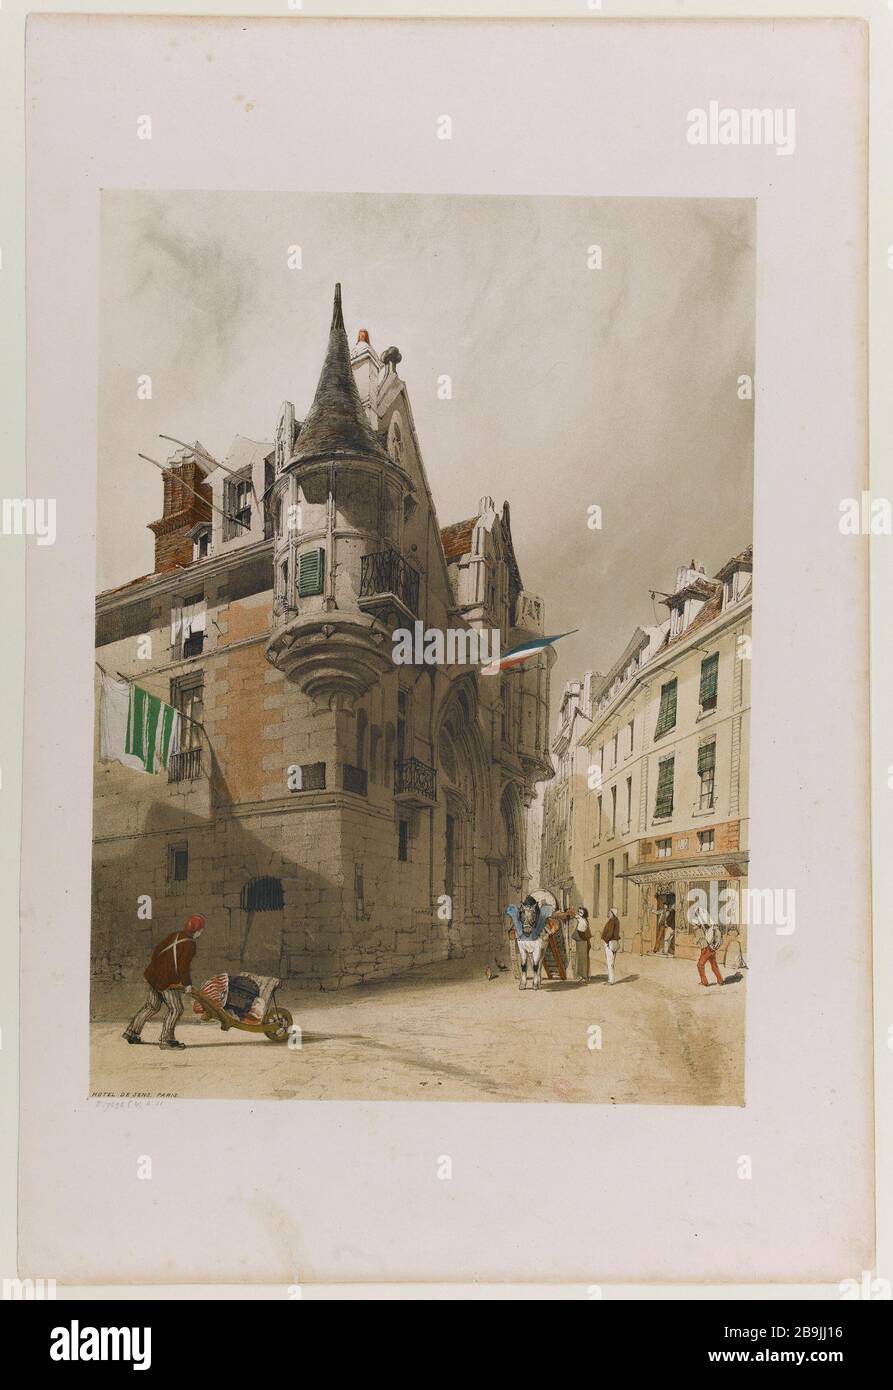 Hotel Sense Thomas Shotter Boys (1803-1874). 'Hôtel de Sens', Parigi (IVème arr.) Gravure (lithographie couleur). Parigi, musée Carnavalet. Foto Stock